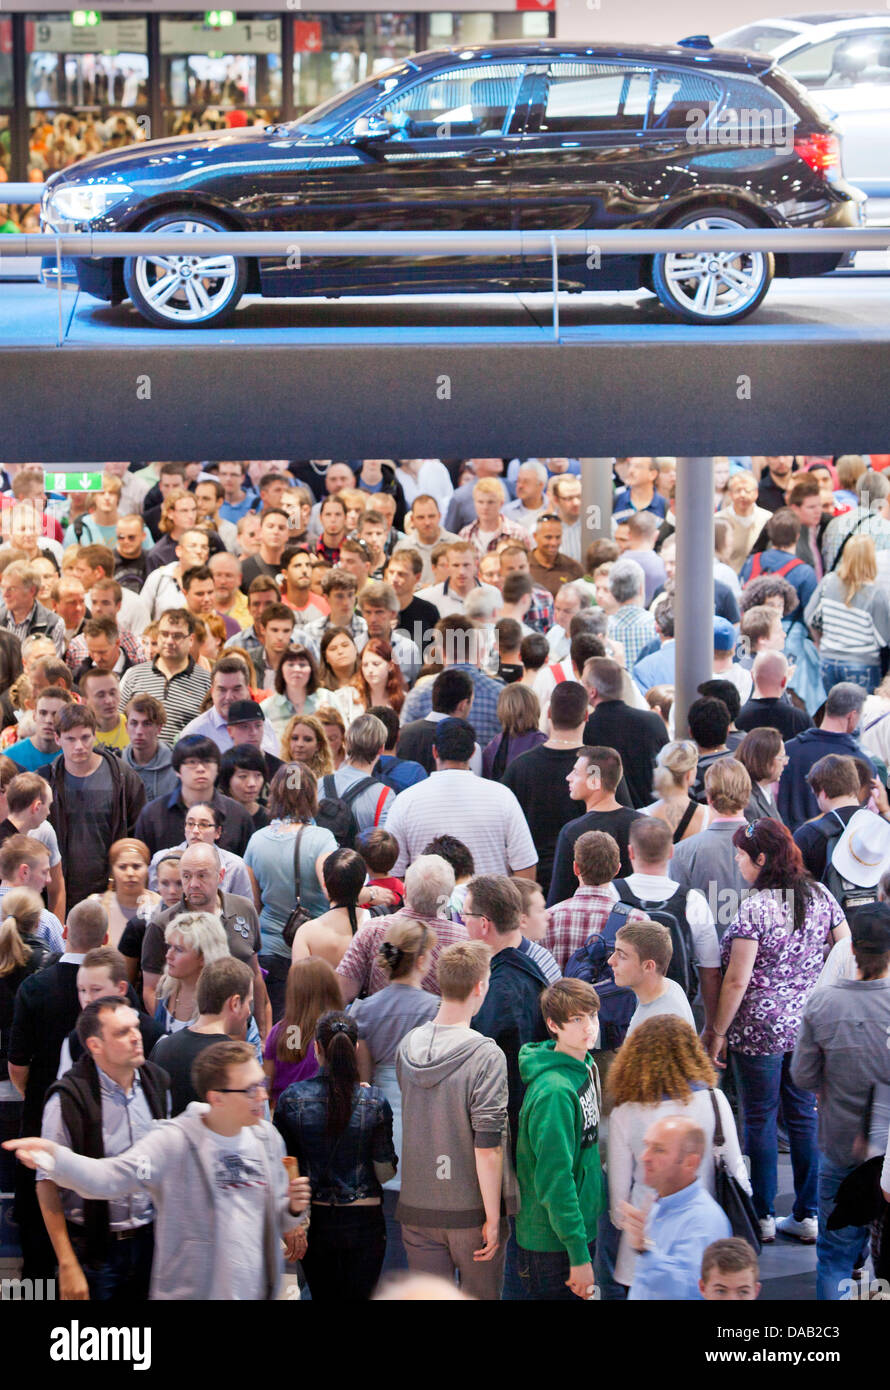 Die BMW-Halle ist überfüllt mit Besuchern auf der Frankfurter Automobilausstellung (IAA) in Frankfurt Main, Deutschland 24. September 2011. Nach Angaben des Verbandes der deutschen Automobilindustrie (VDA) hat die IAA viel mehr Besucher als erwartet hatte. Foto: FRANK RUMPENHORST Stockfoto